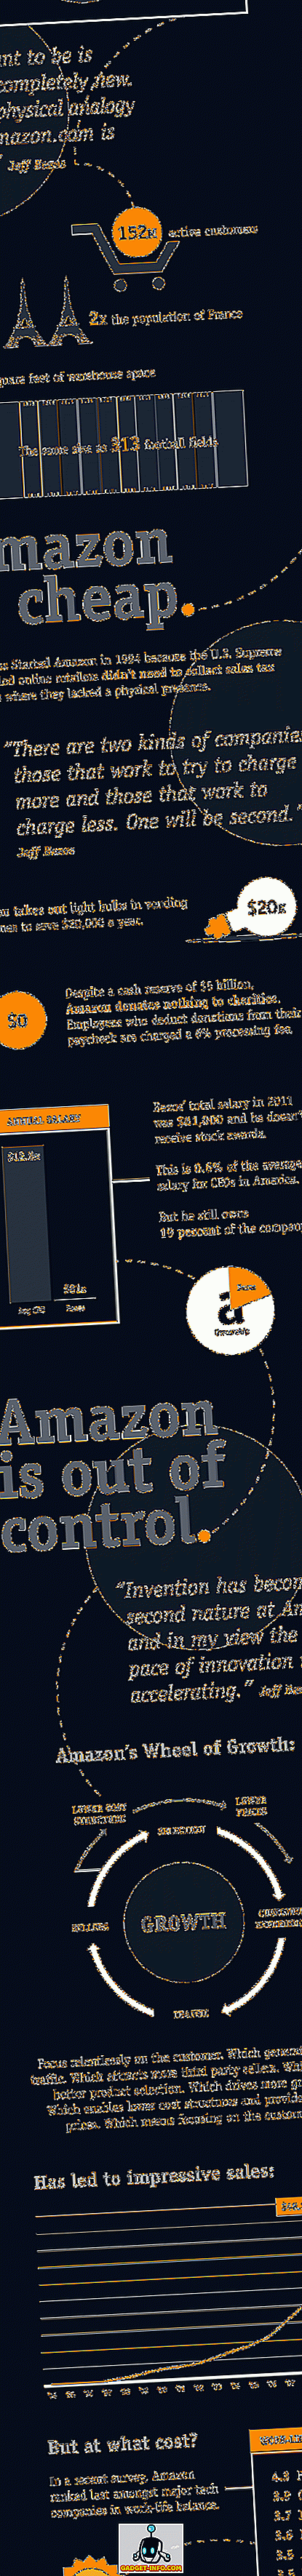 Amazon - Η εσωτερική ιστορία [Infographic]